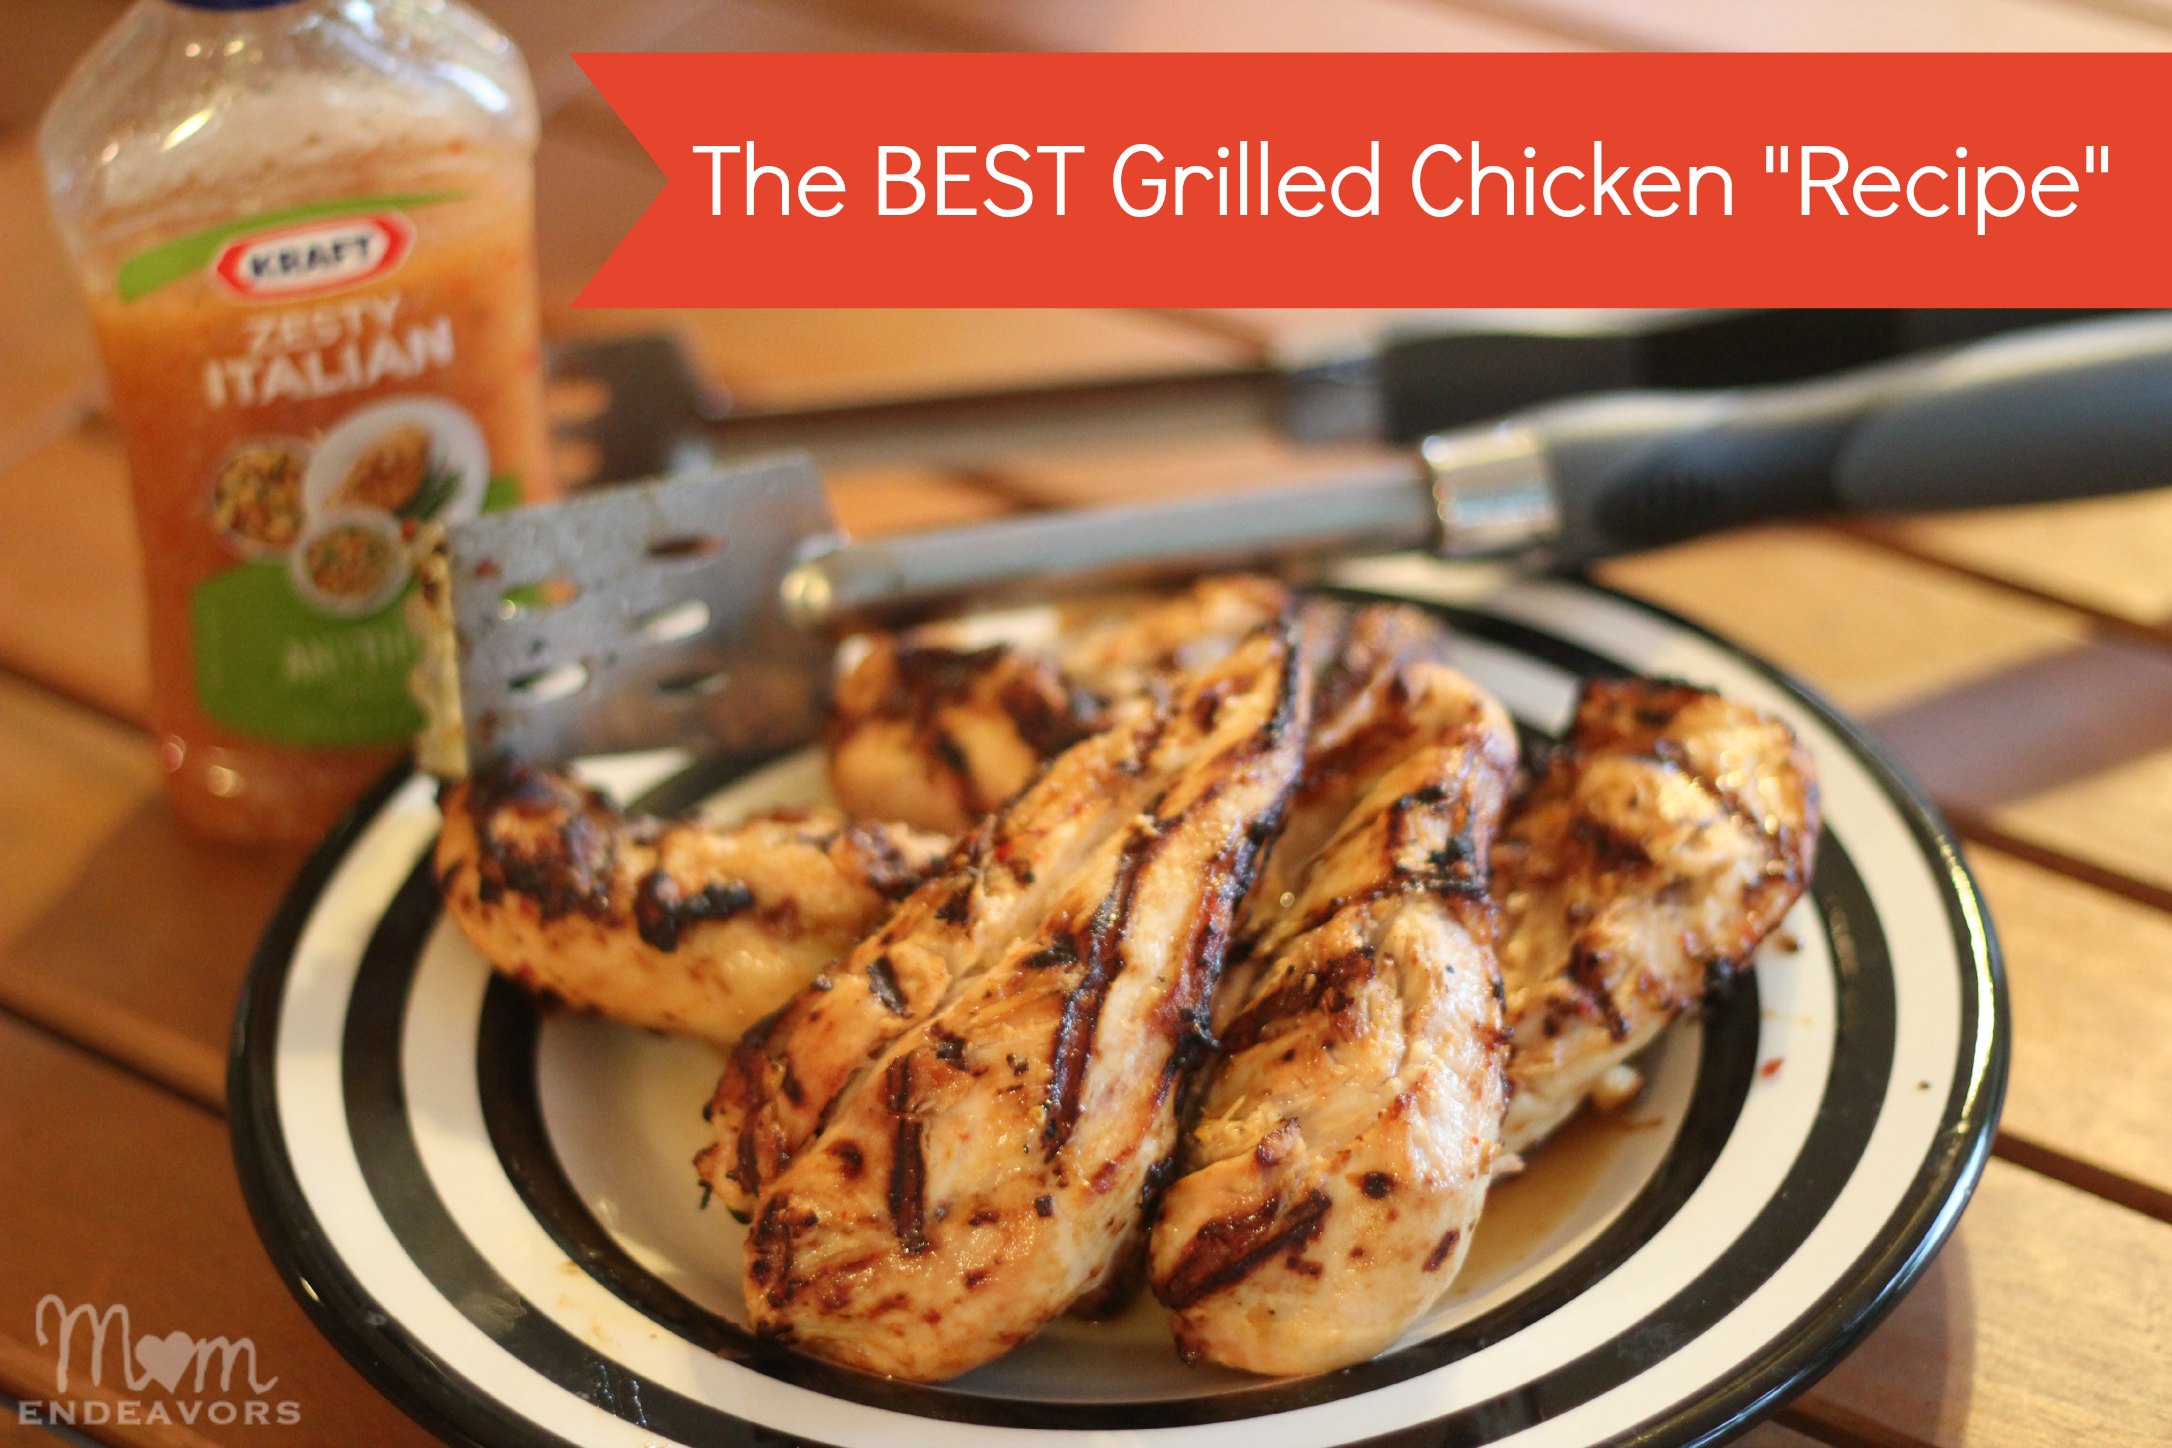 The Best grilled chicken recipe